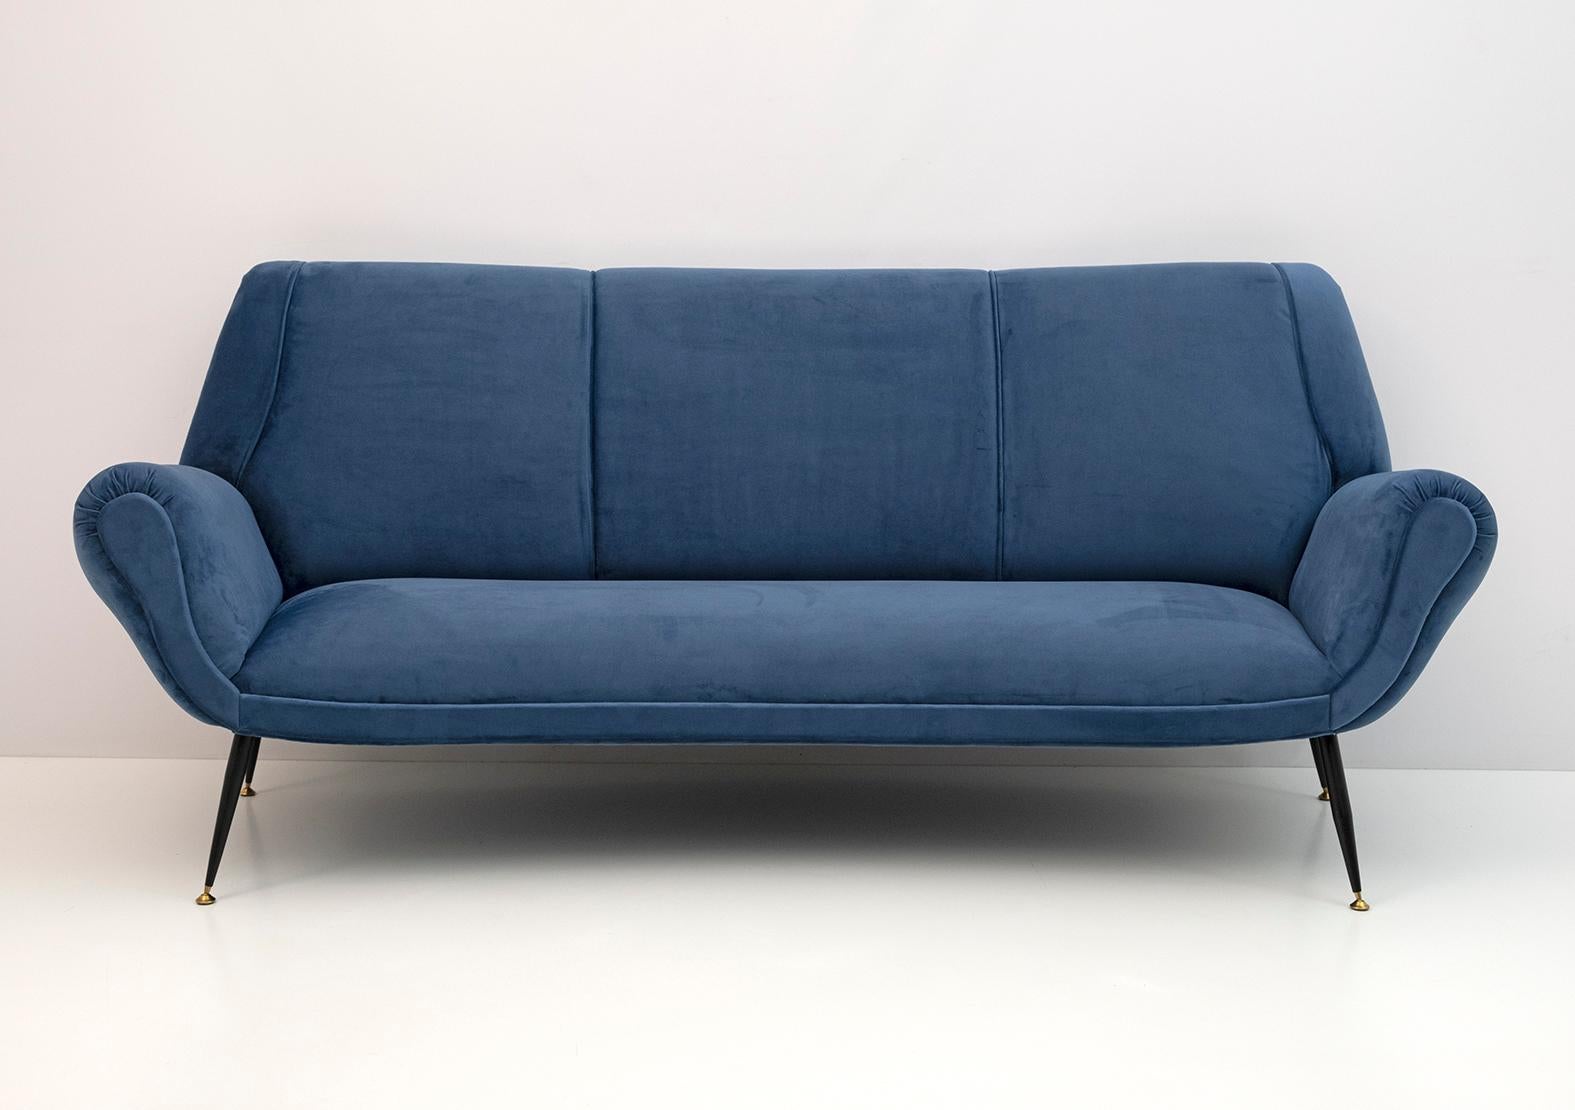 Canapé incurvé conçu par Gigi Radice pour Minotti. Il a été réalisé avec une structure en bois massif et une tapisserie en velours bleu avec des pieds en métal et en laiton. La structure est authentique, seuls le rembourrage et le padding ont été